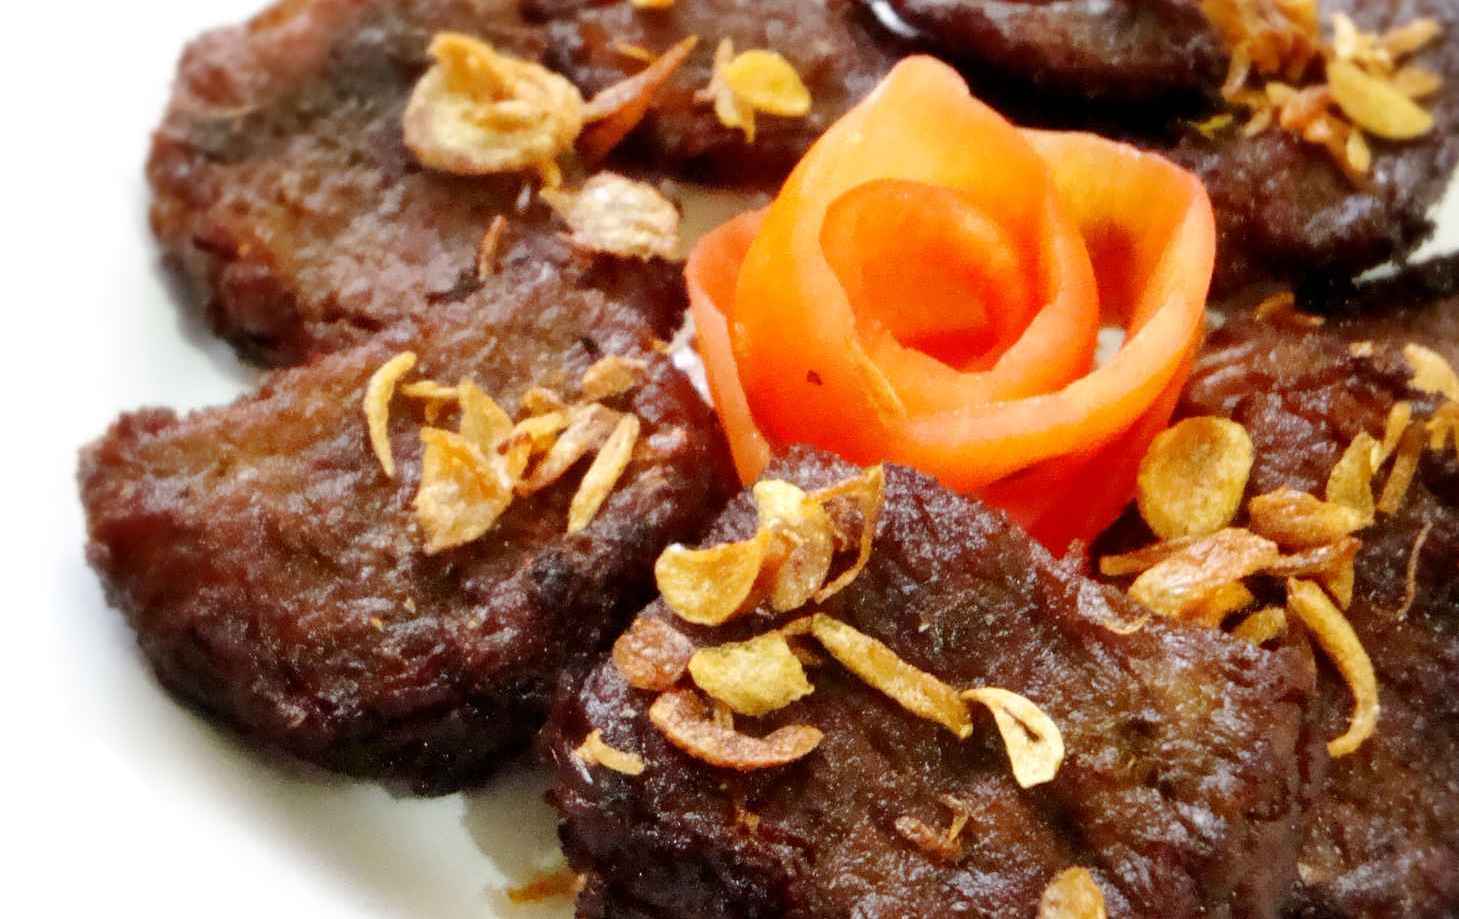 Halal Food Recipe Series Indonesian Muslim inspired “Beef